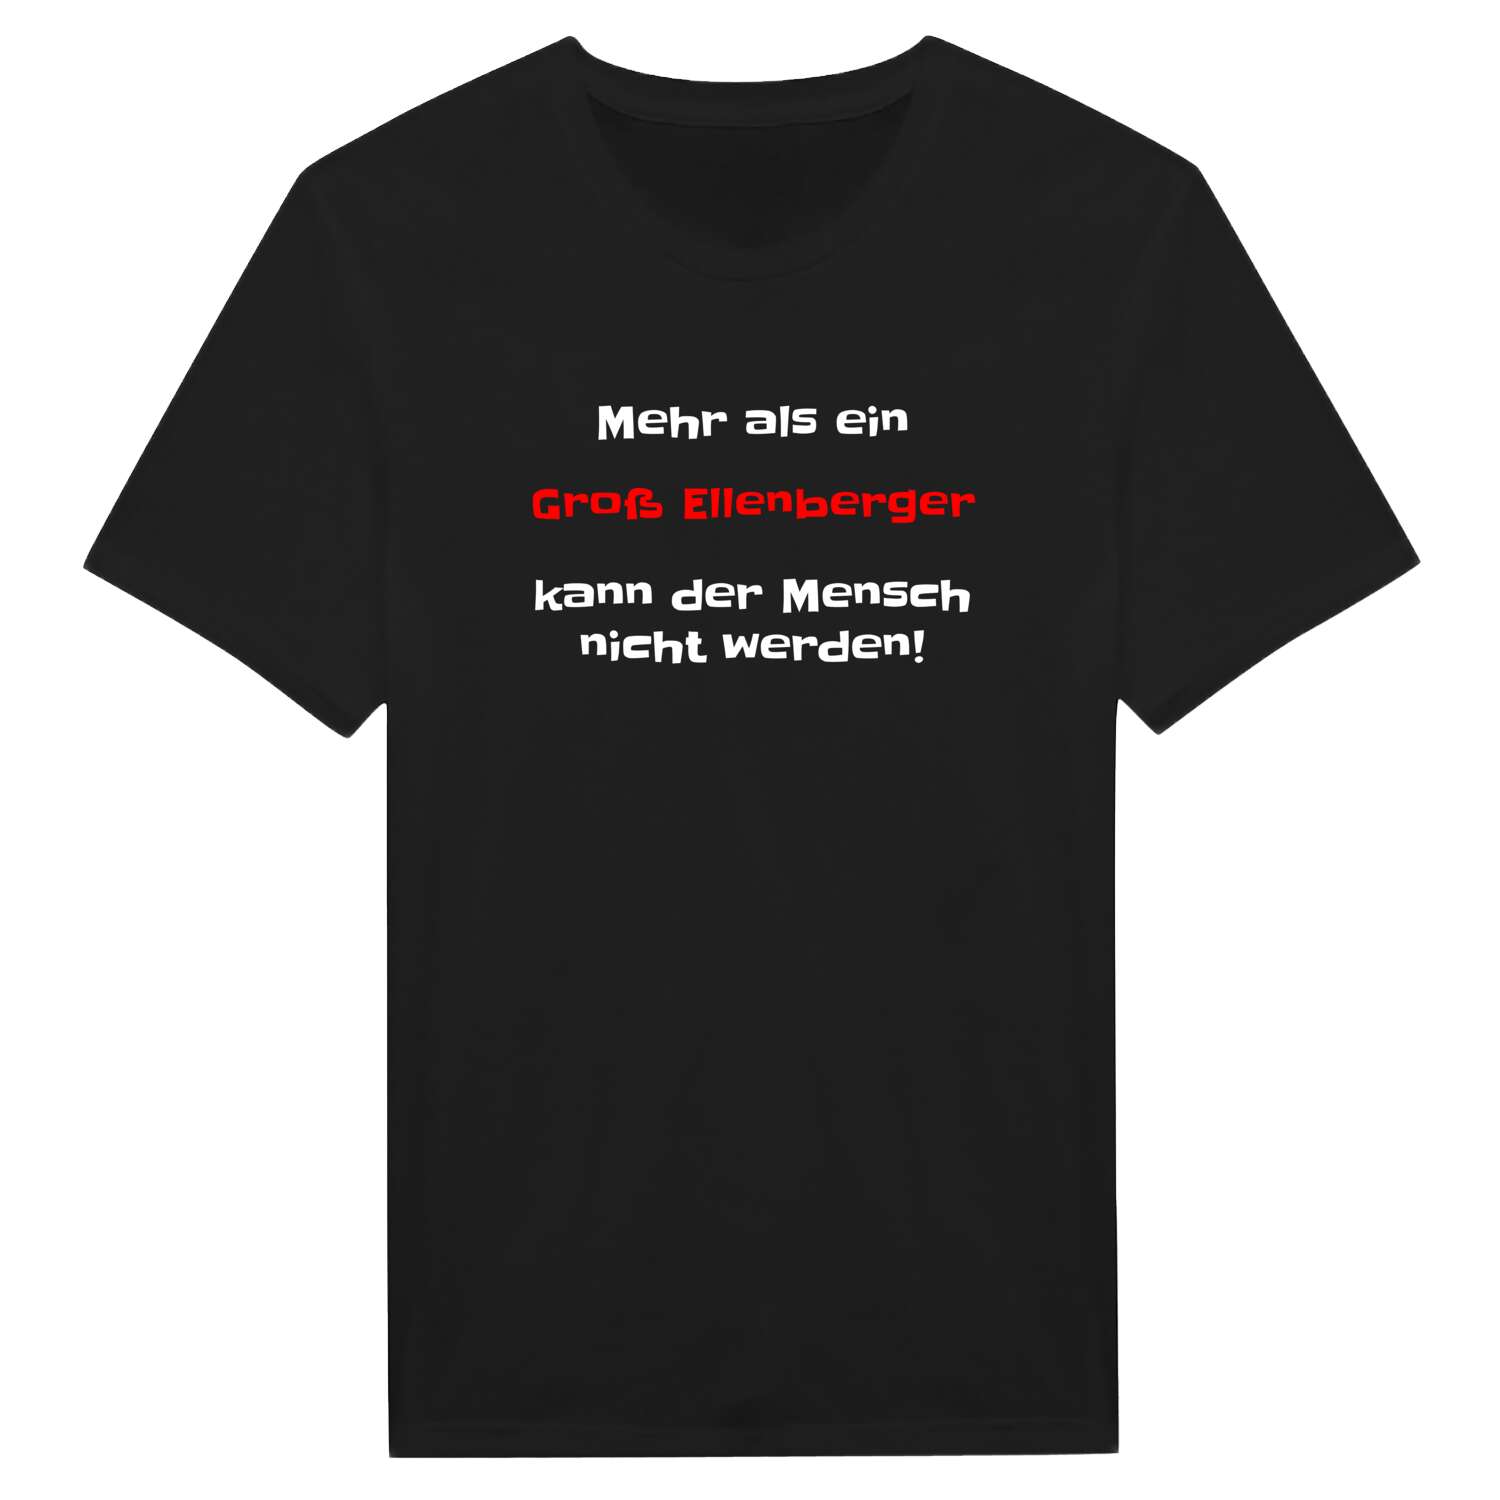 Groß Ellenberg T-Shirt »Mehr als ein«